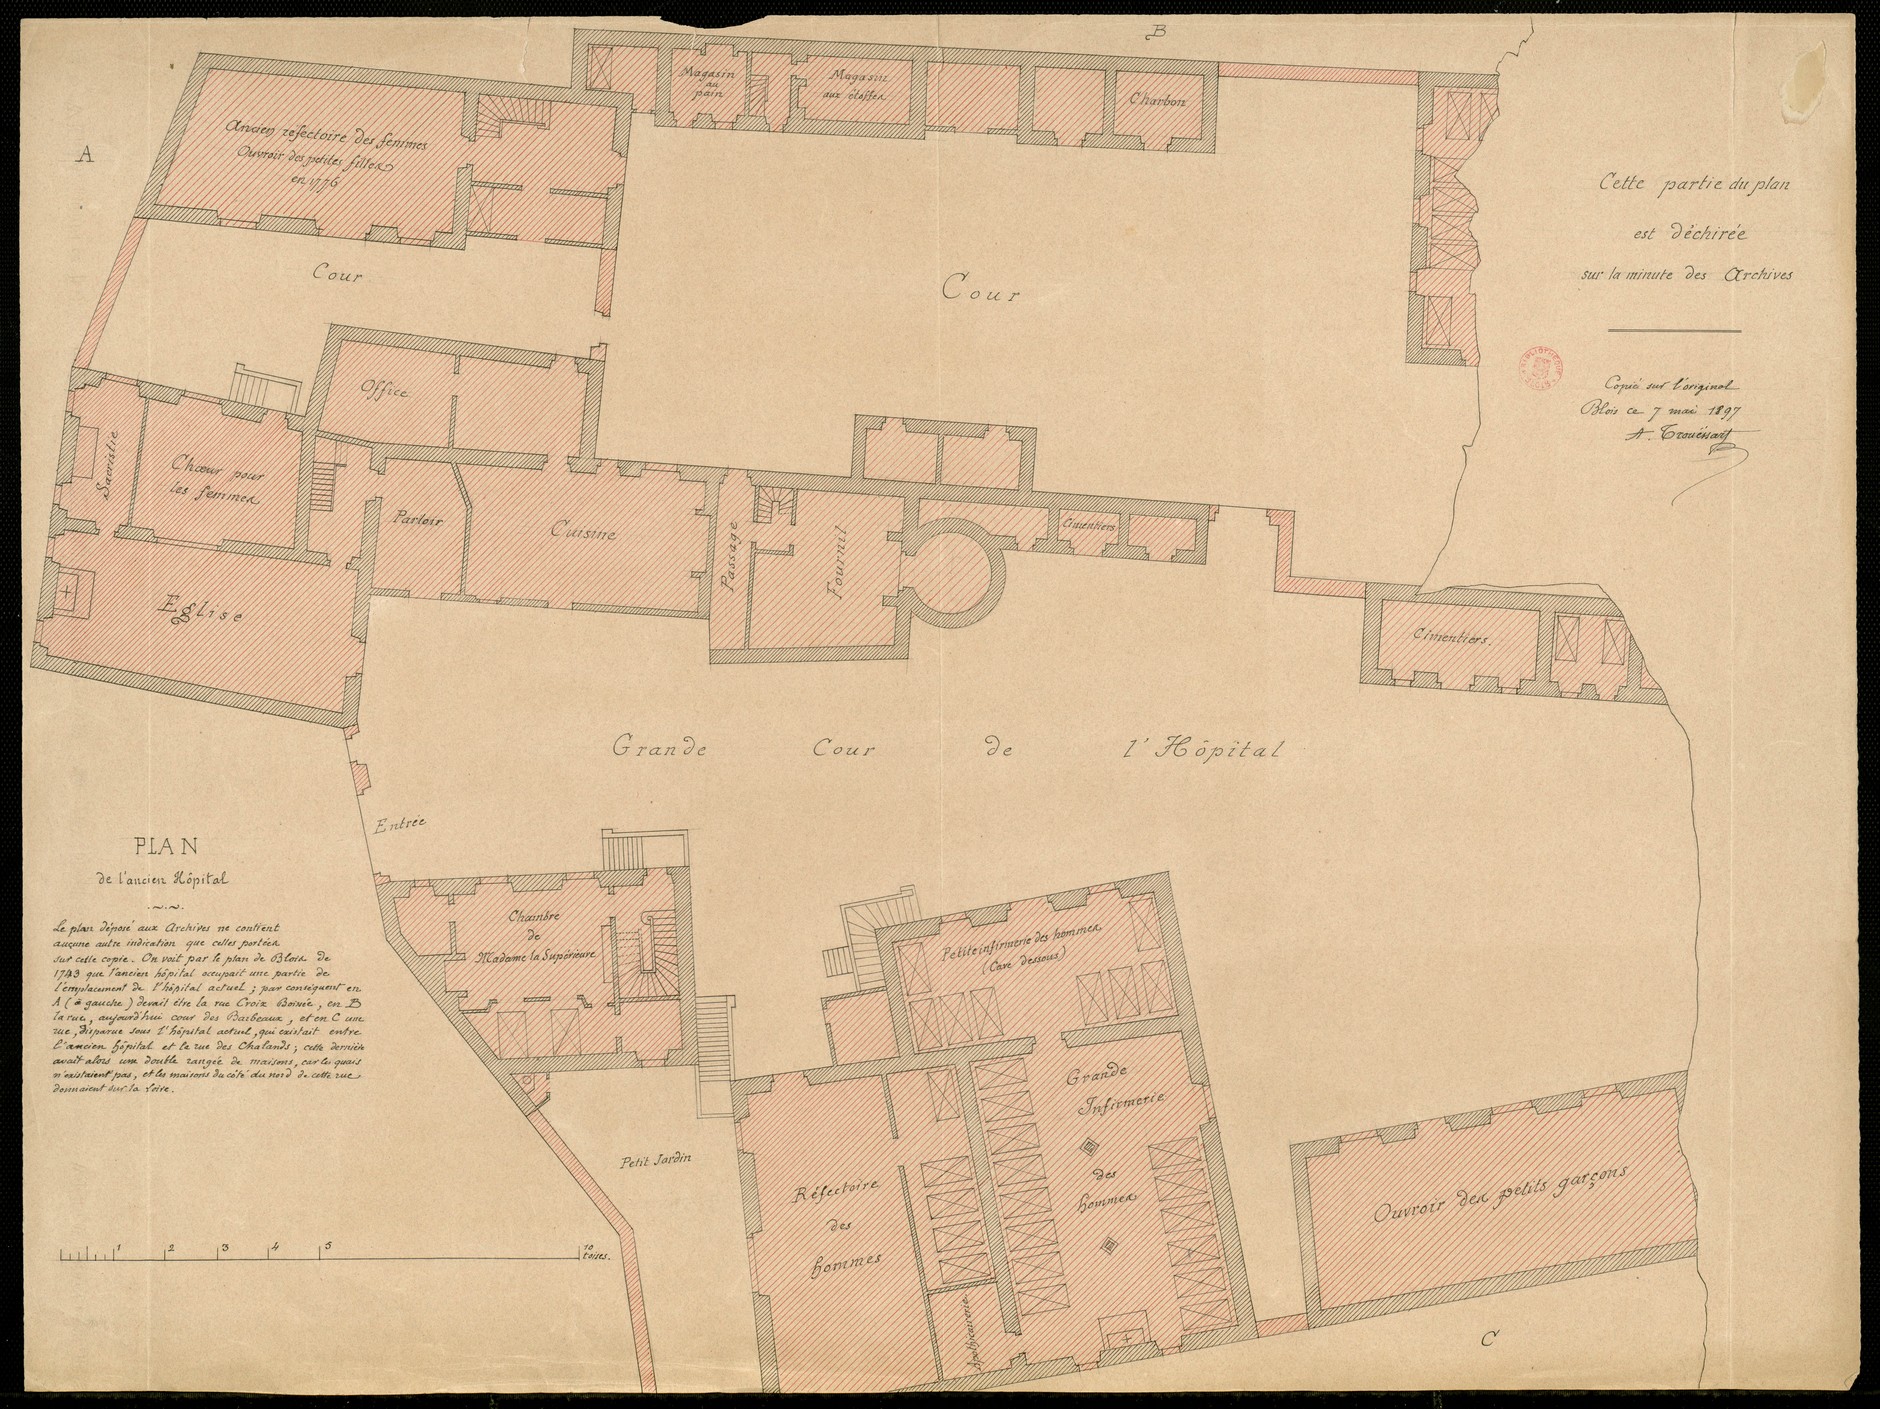 Blois, Plan de l'hopital général de Vienne, fin du XVIIIe siècle, copie par Trouessart, 1897